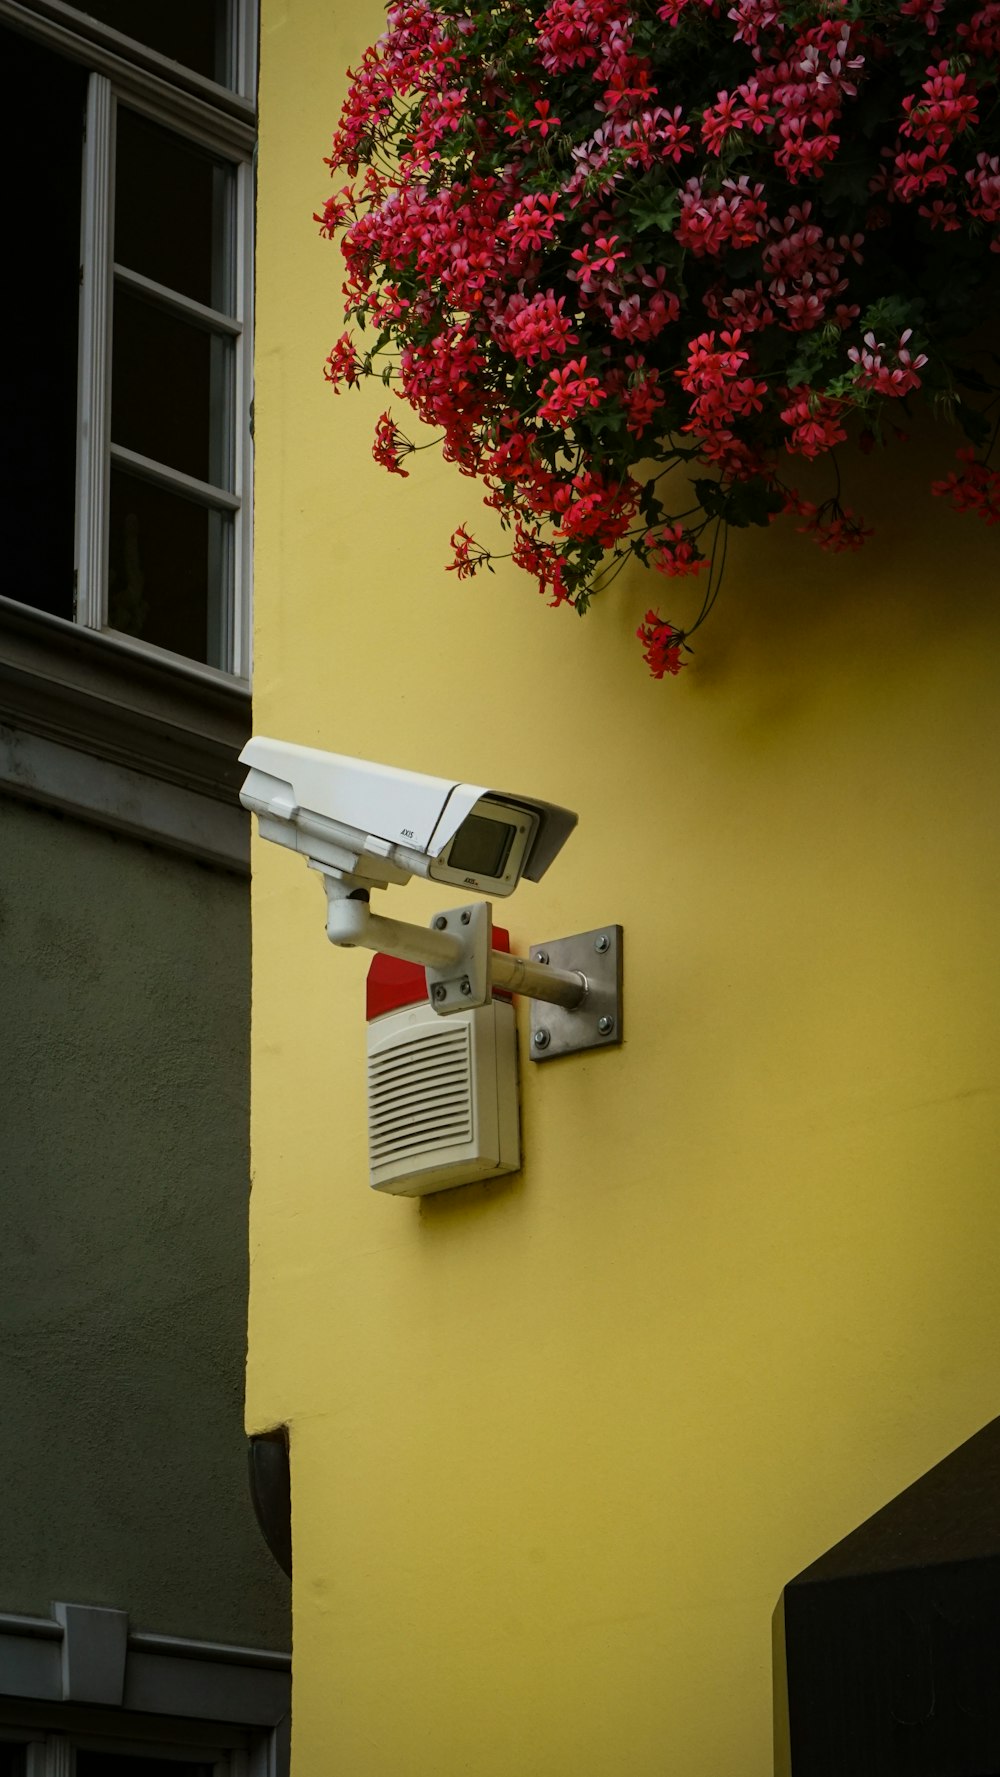 câmera de segurança branca e cinza montada na parede pintada de amarelo